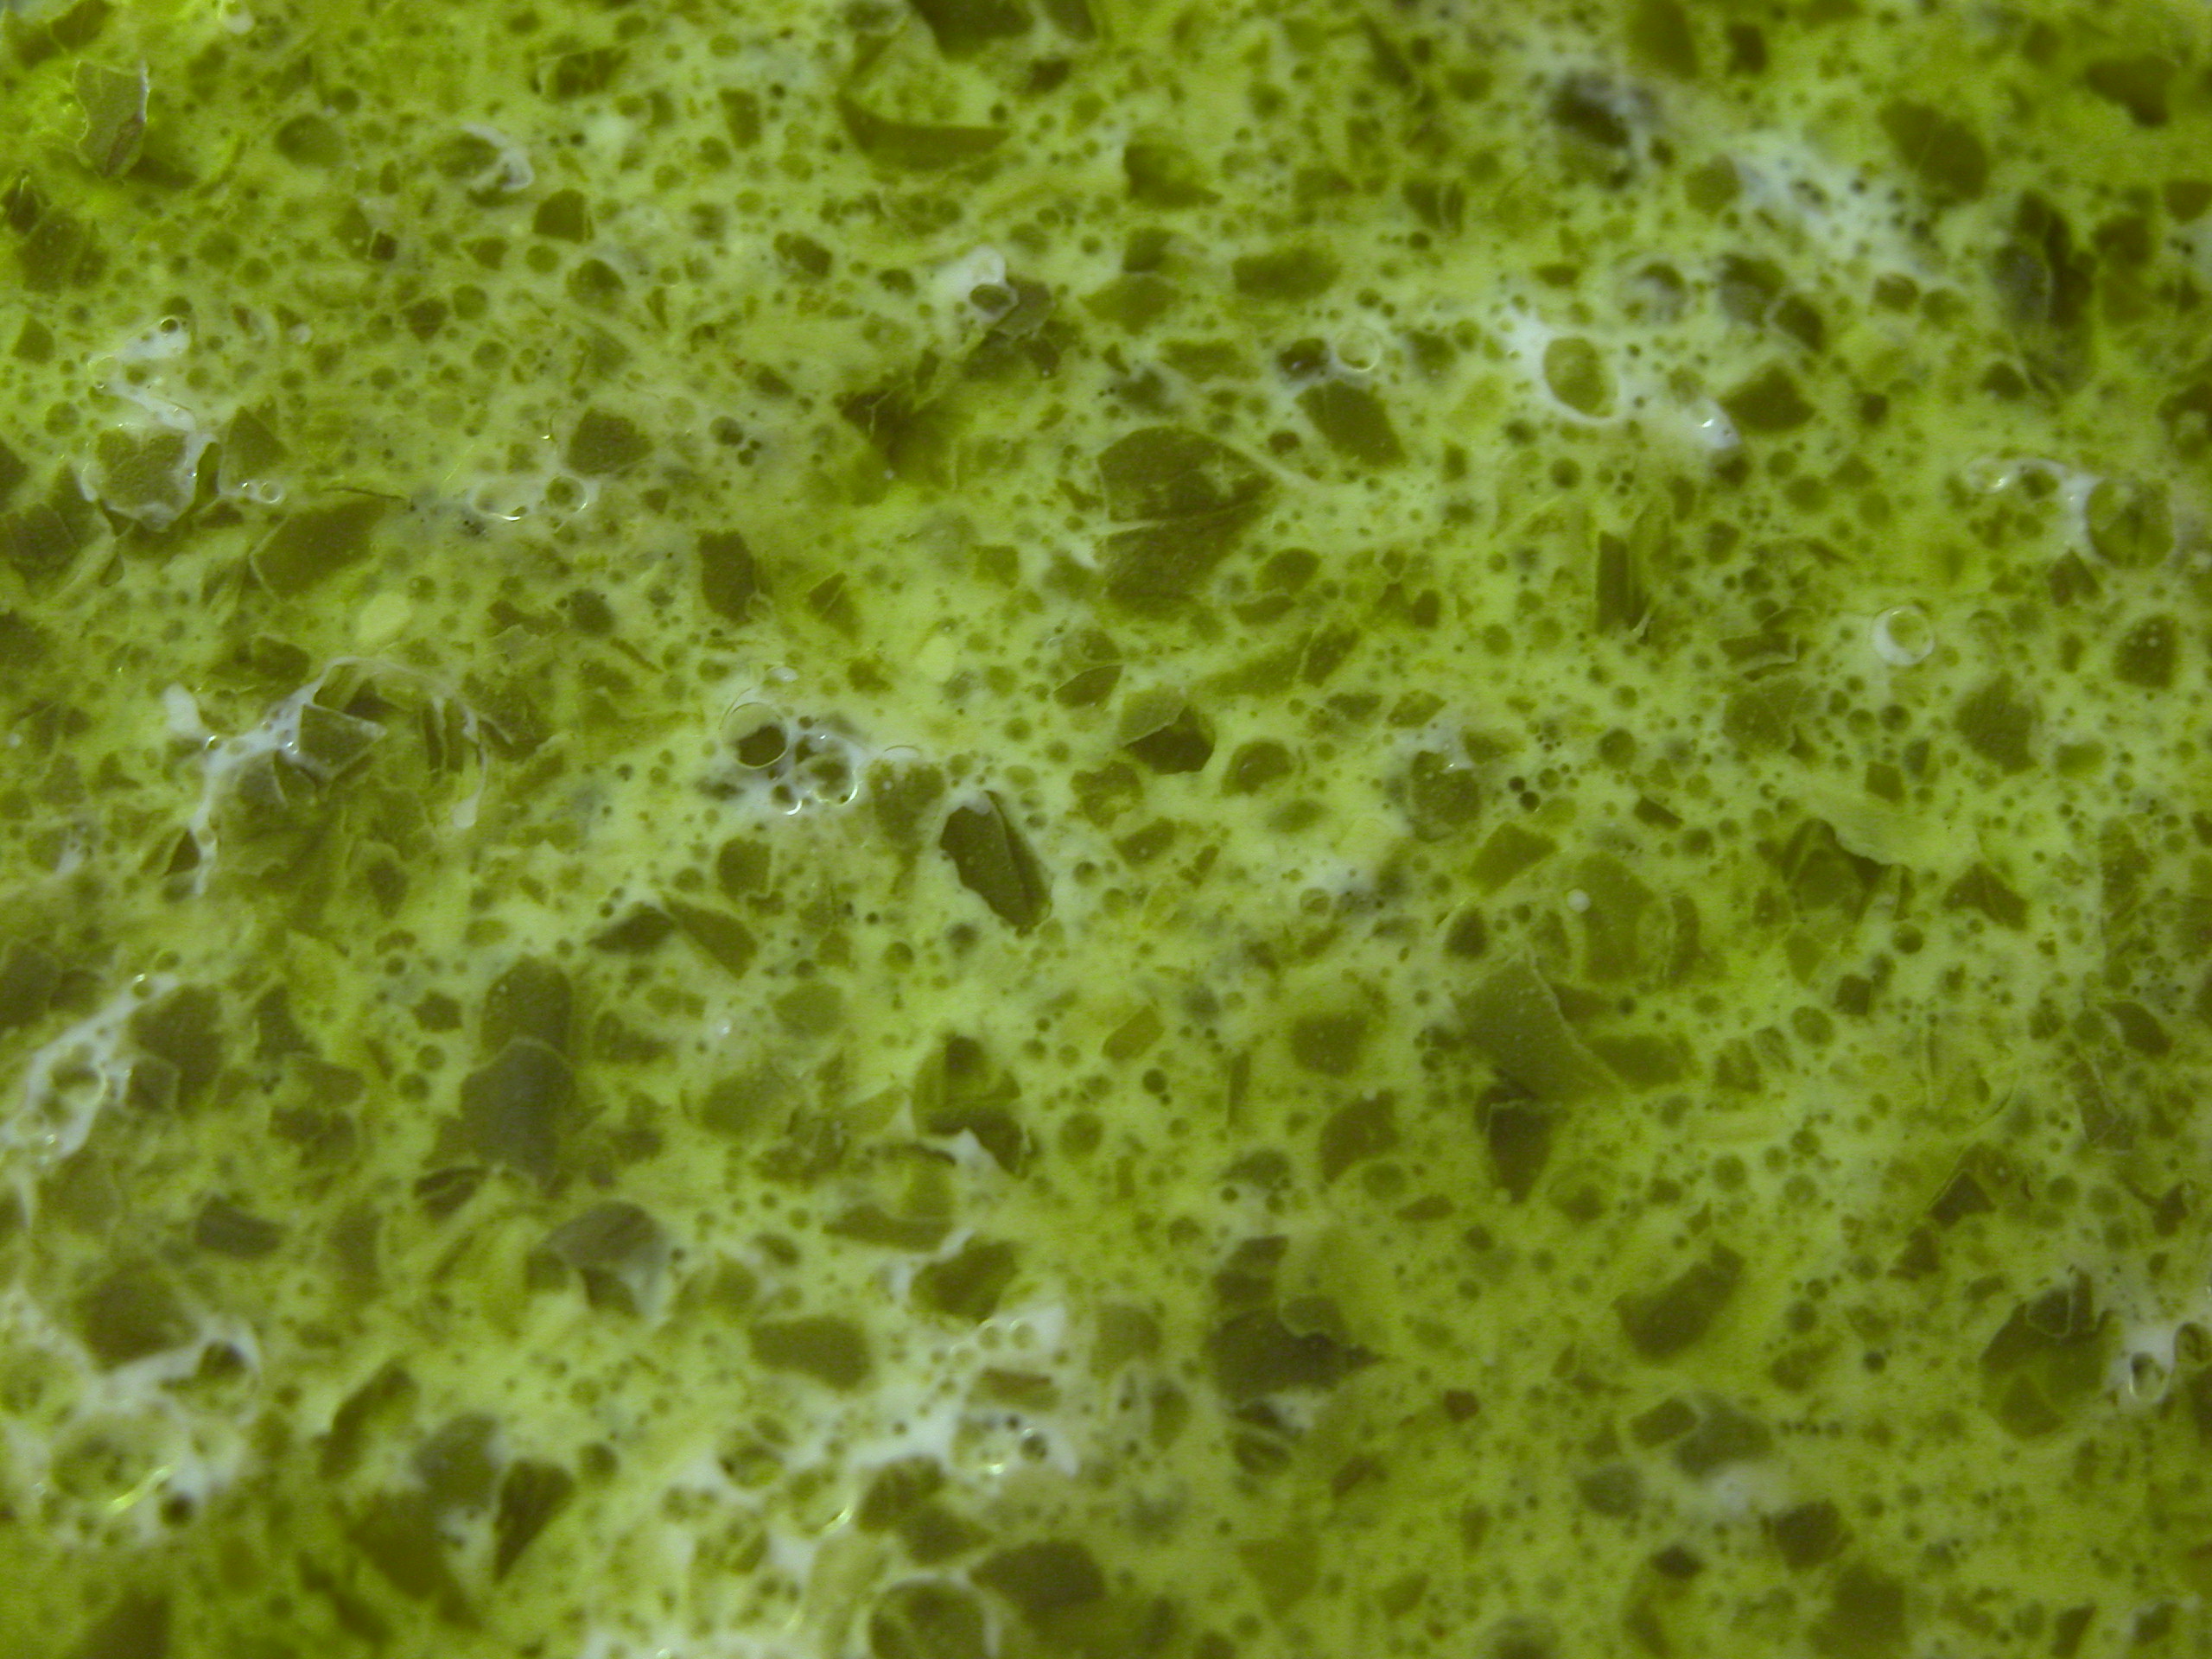 slimey green substance slime.